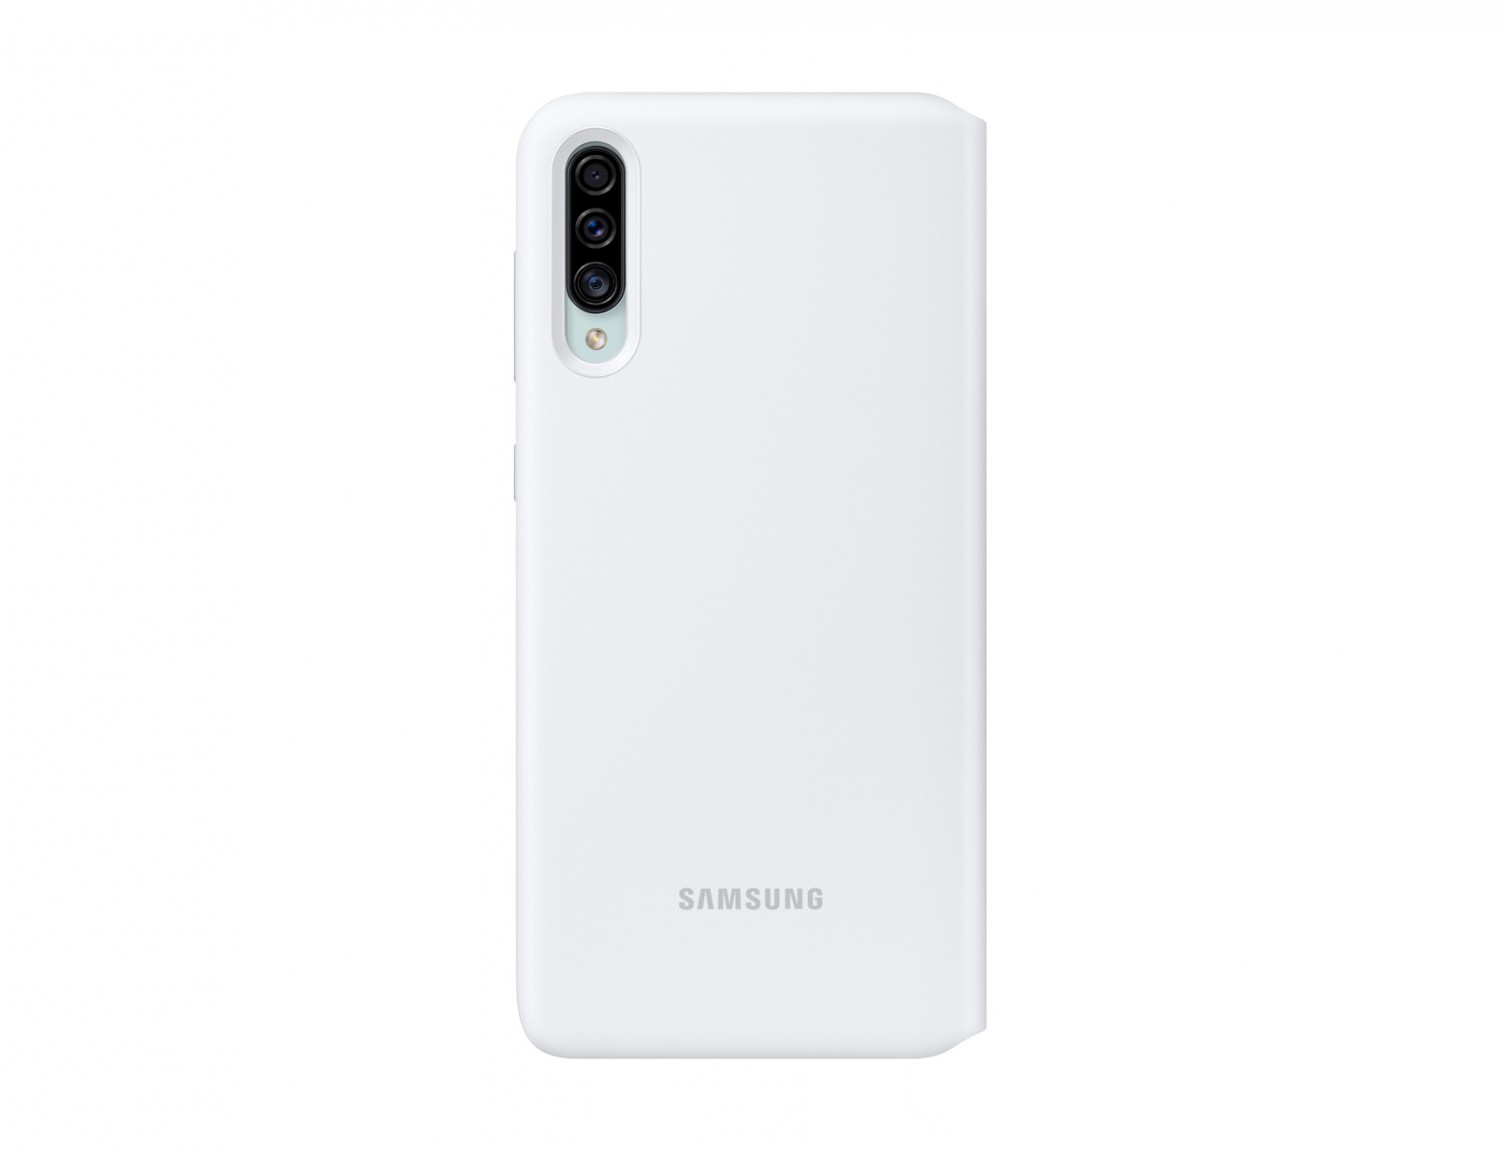 EF-WA307PWE Samsung Wallet Pouzdro pro Galaxy A30s/A50 White (EU Blister)